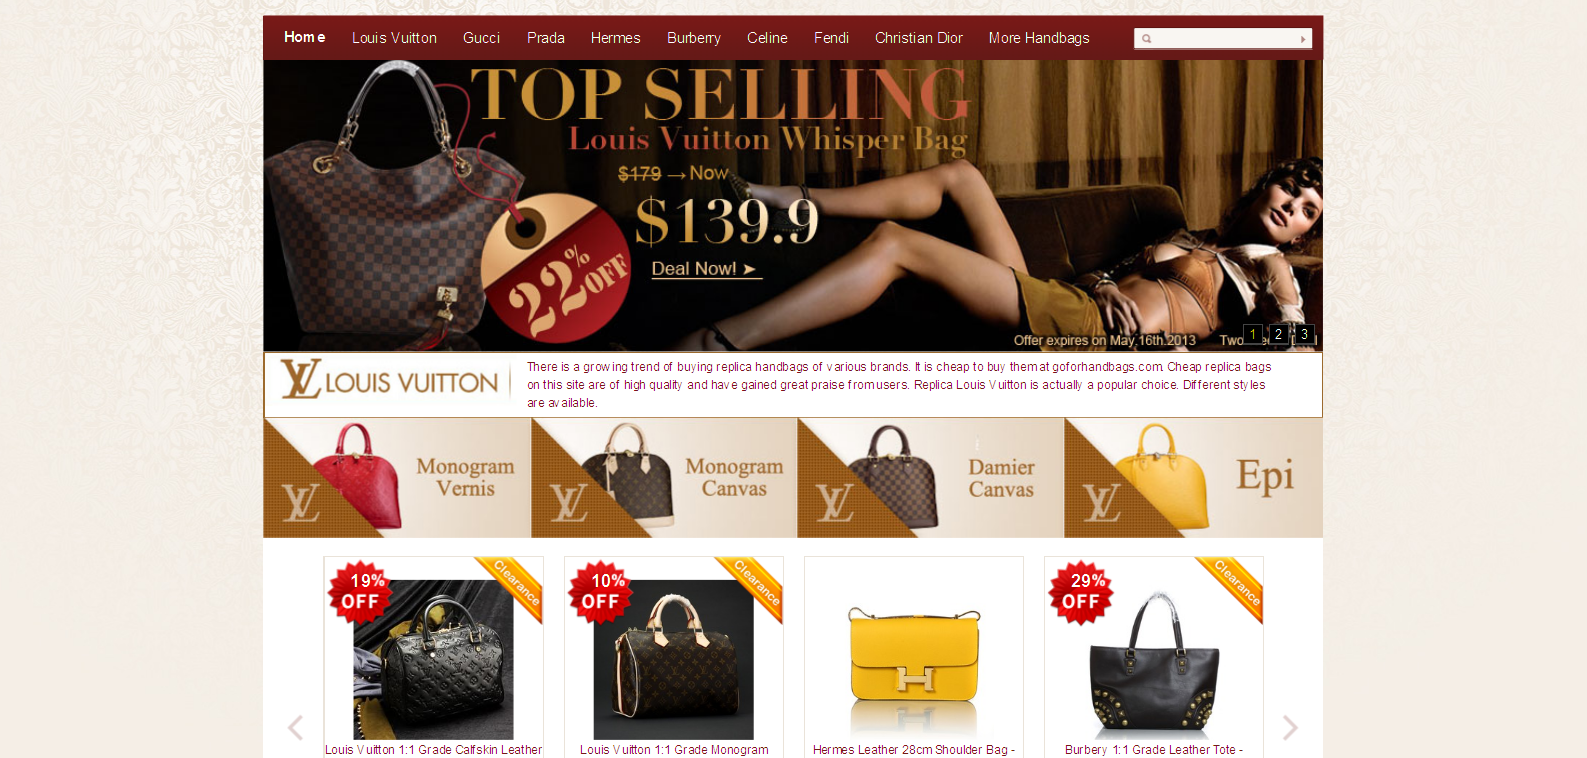 replica handbags,replica louis vuitton handbags cheap online